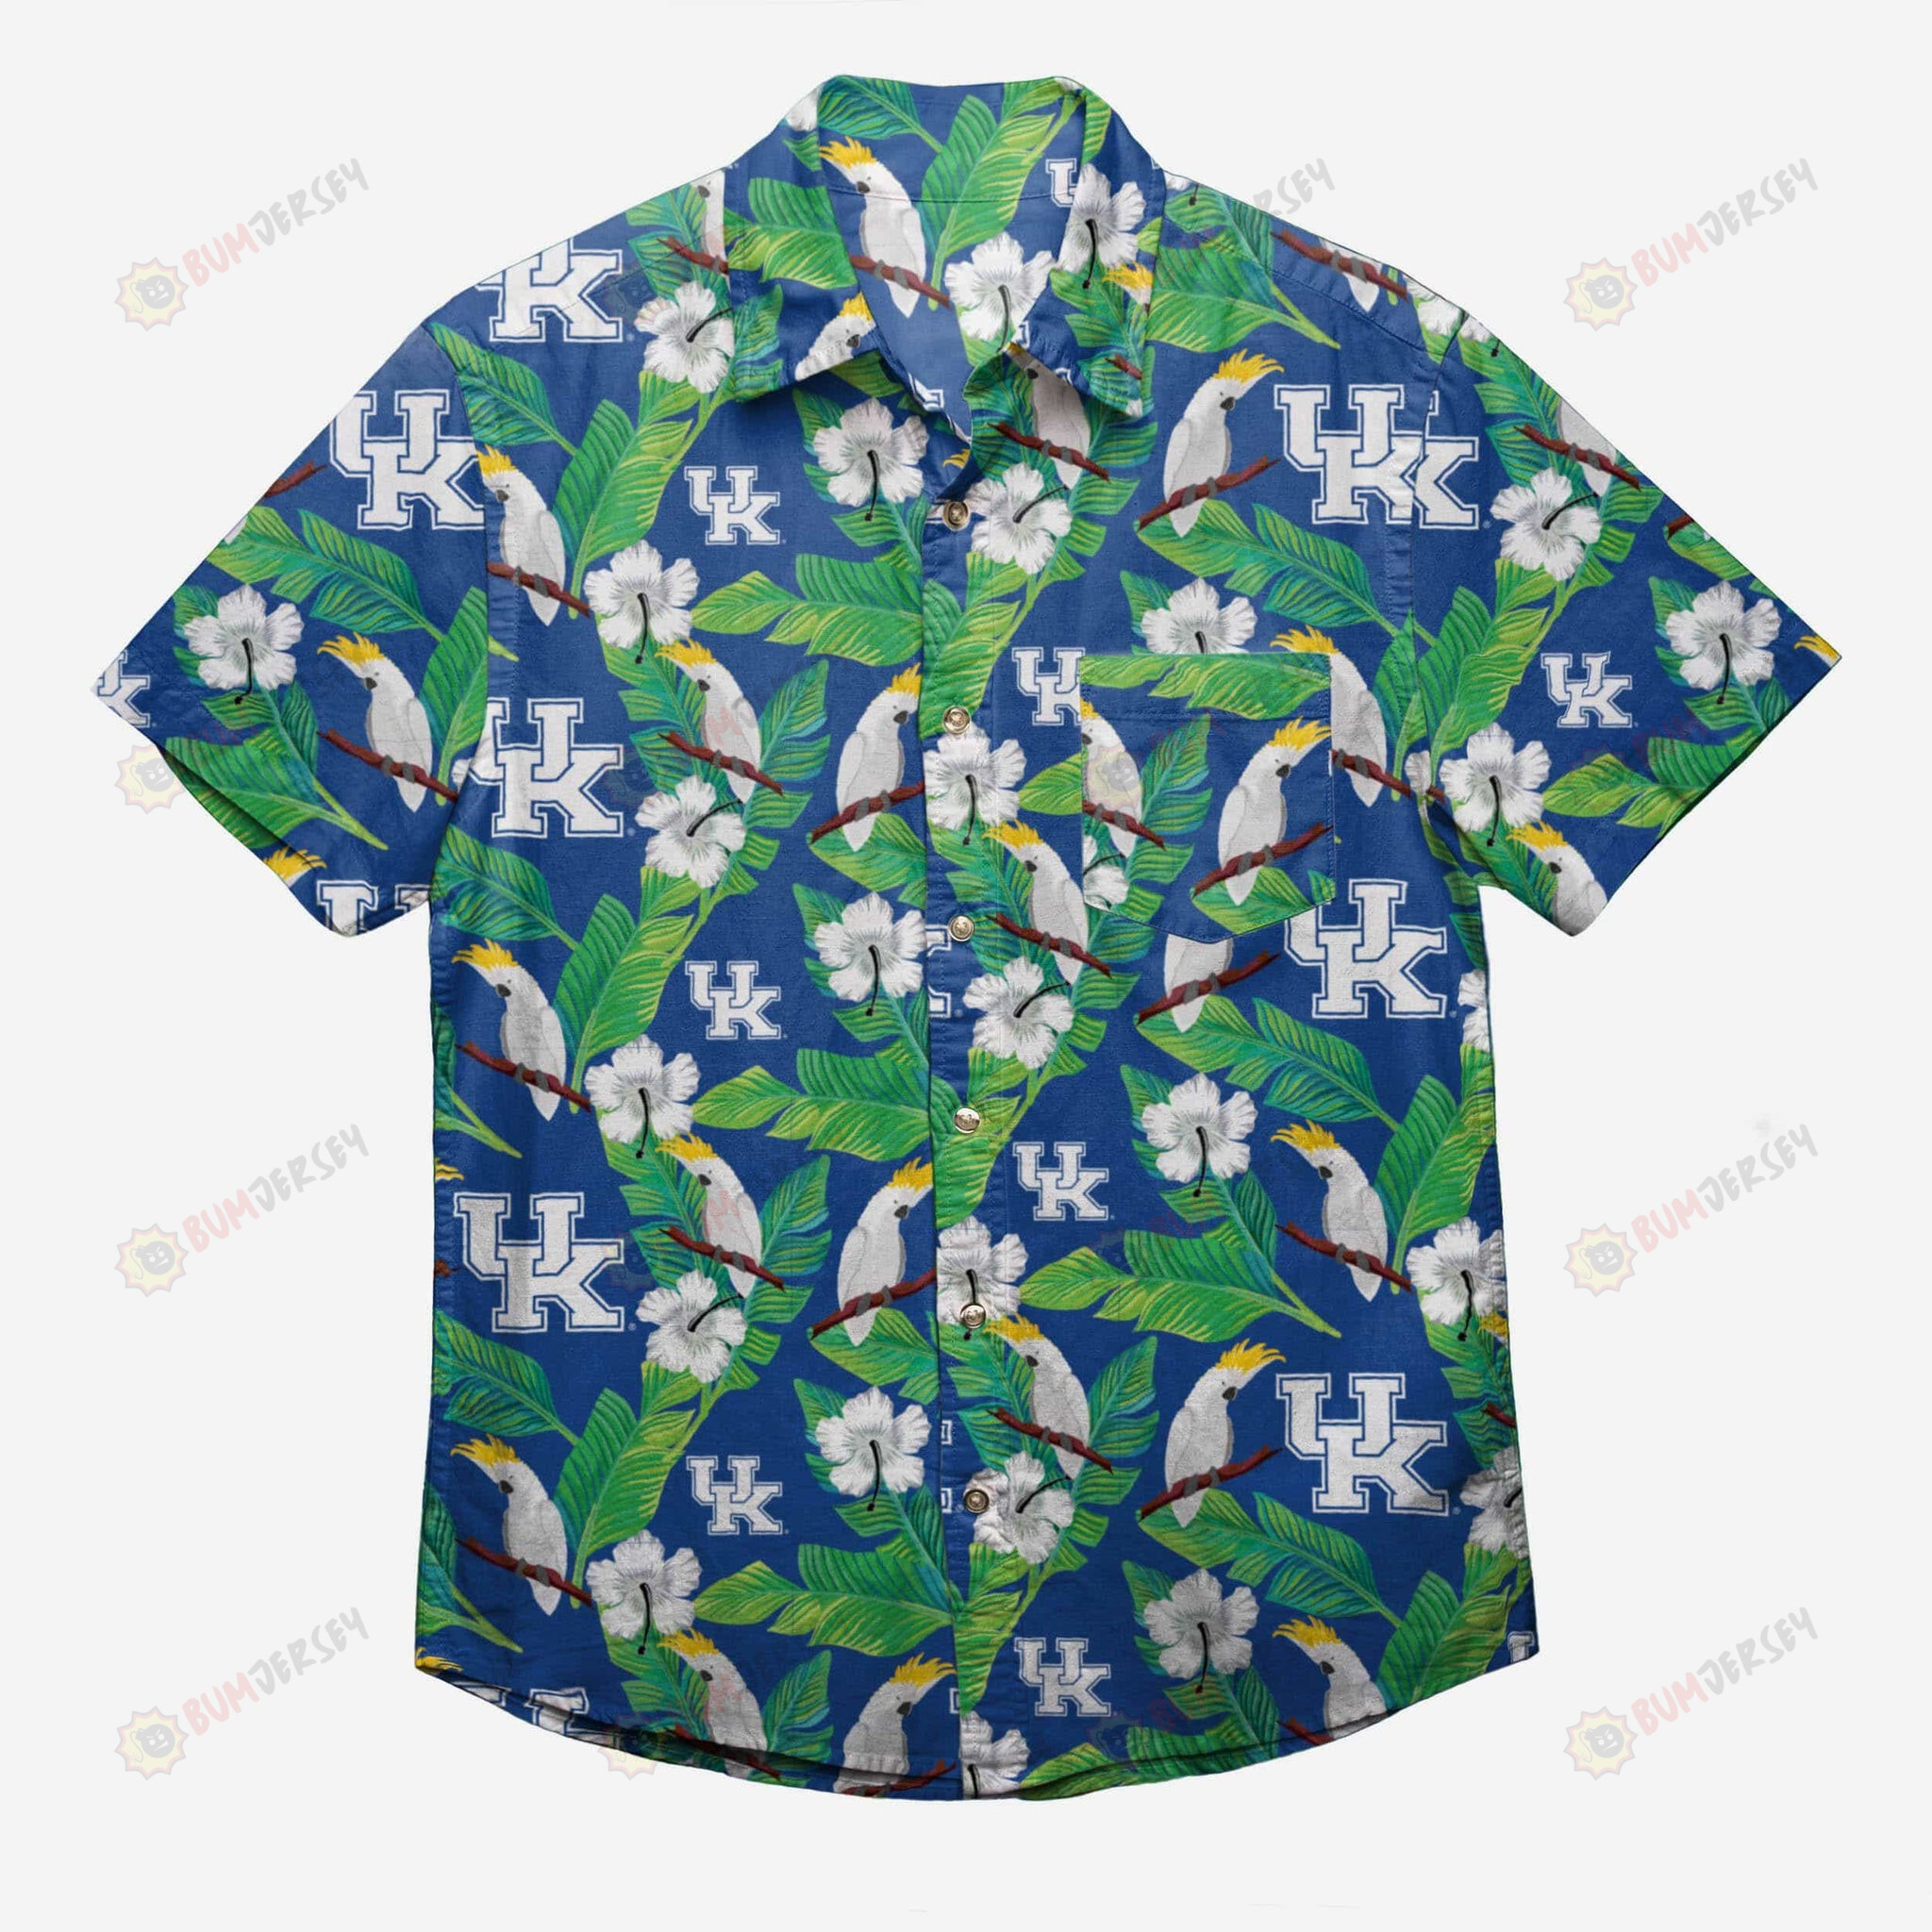 Kentucky Wildcats Floral Button Up Hawaiian Shirt